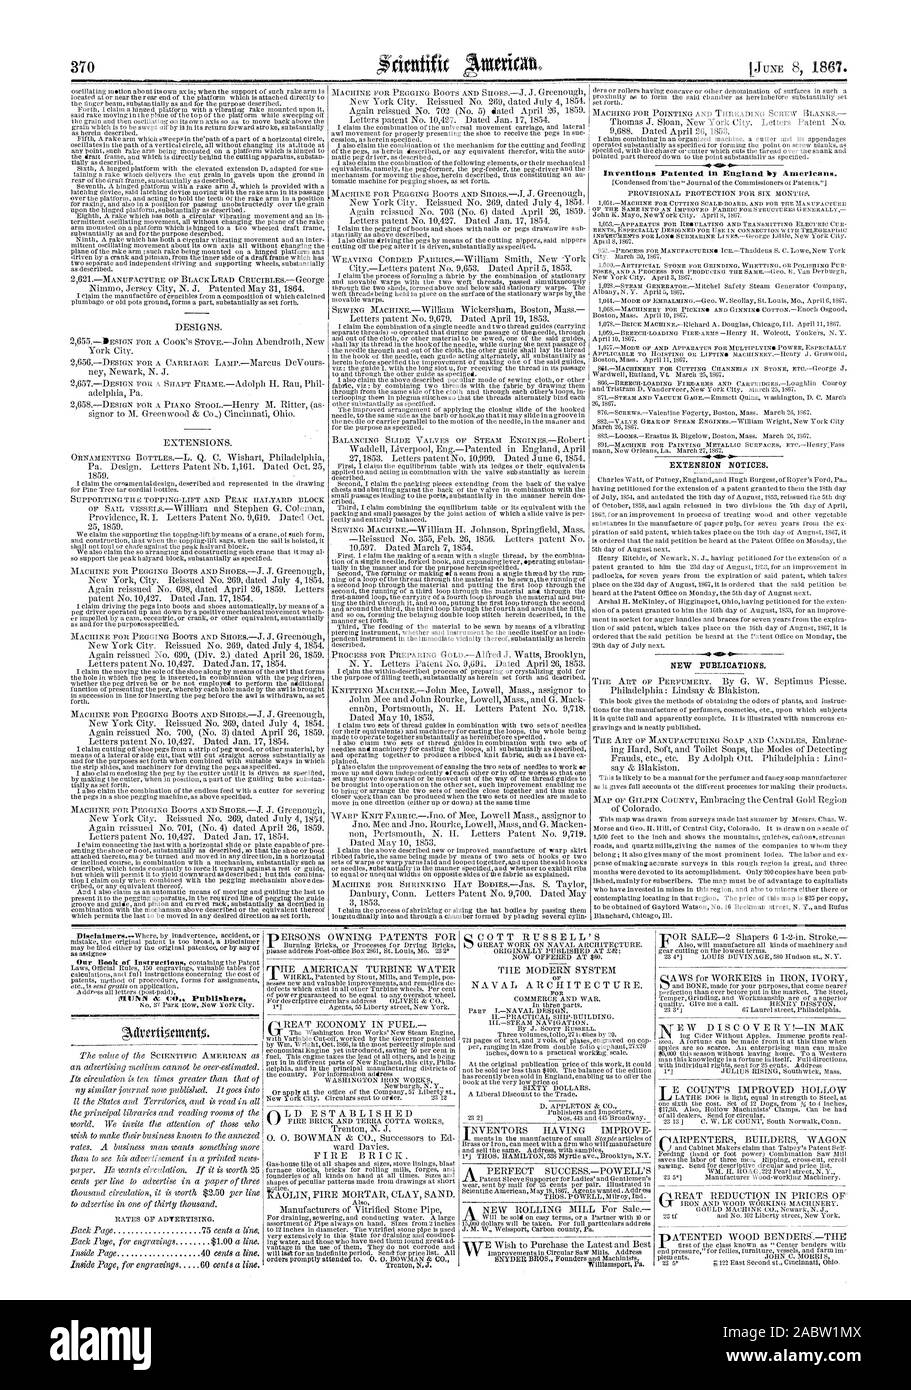 Avvisi di estensione. Nuove pubblicazioni., Scientific American, 1867-06-08 Foto Stock